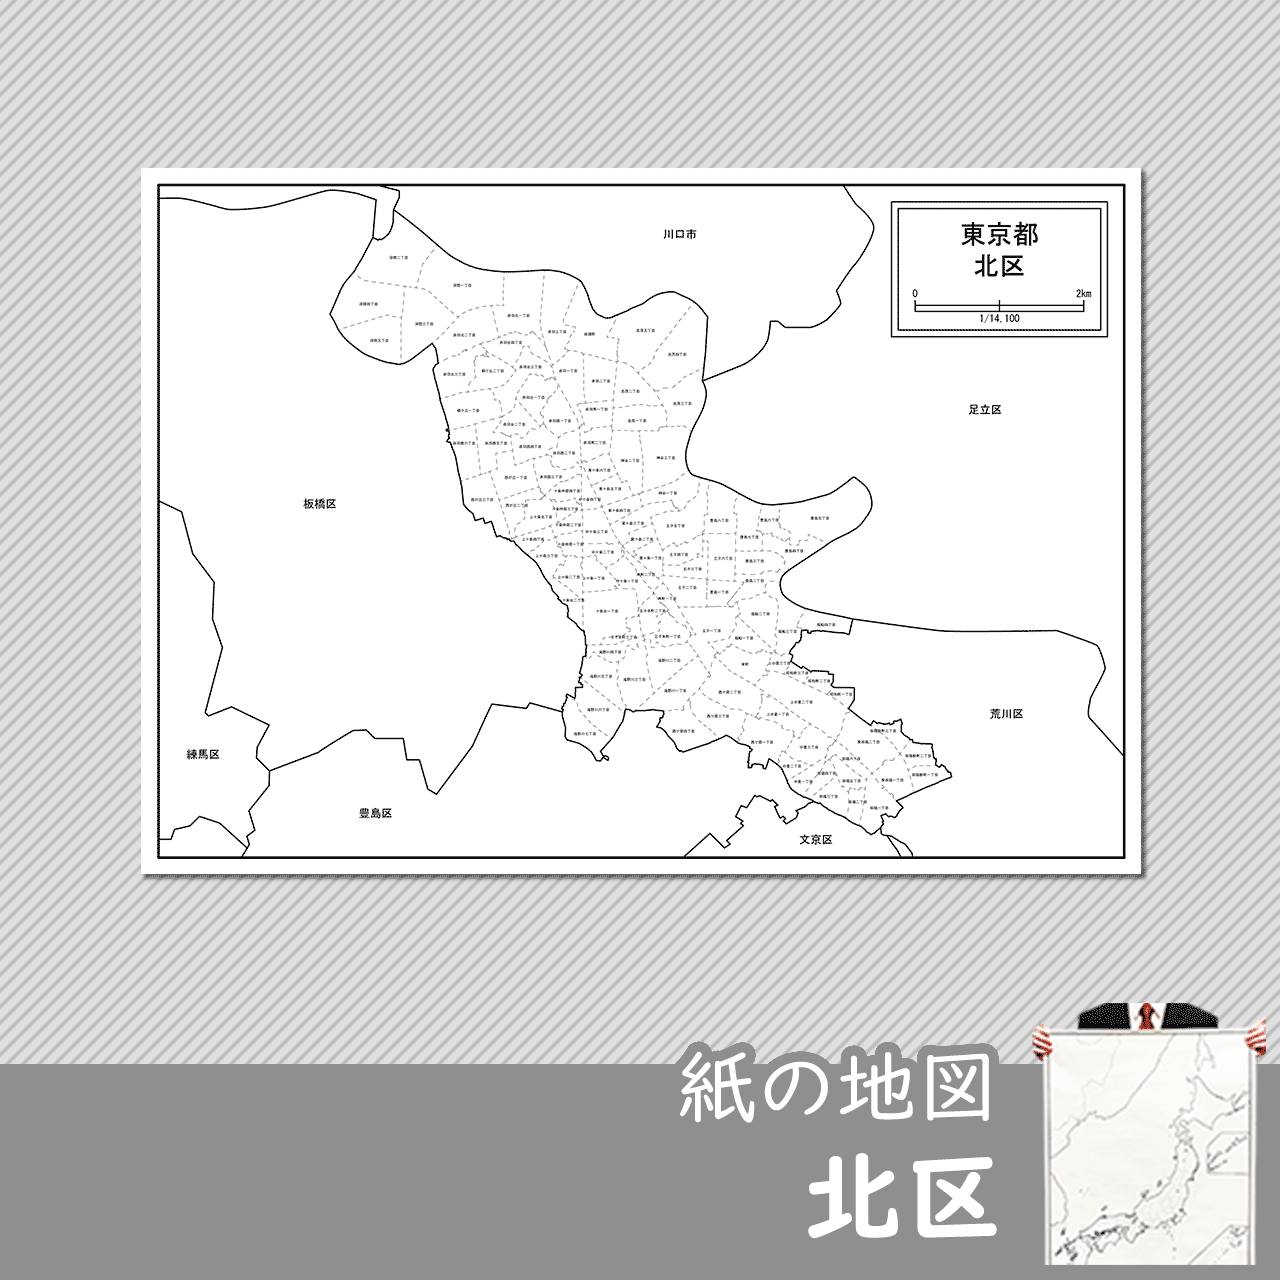 東京都北区の紙の白地図のサムネイル